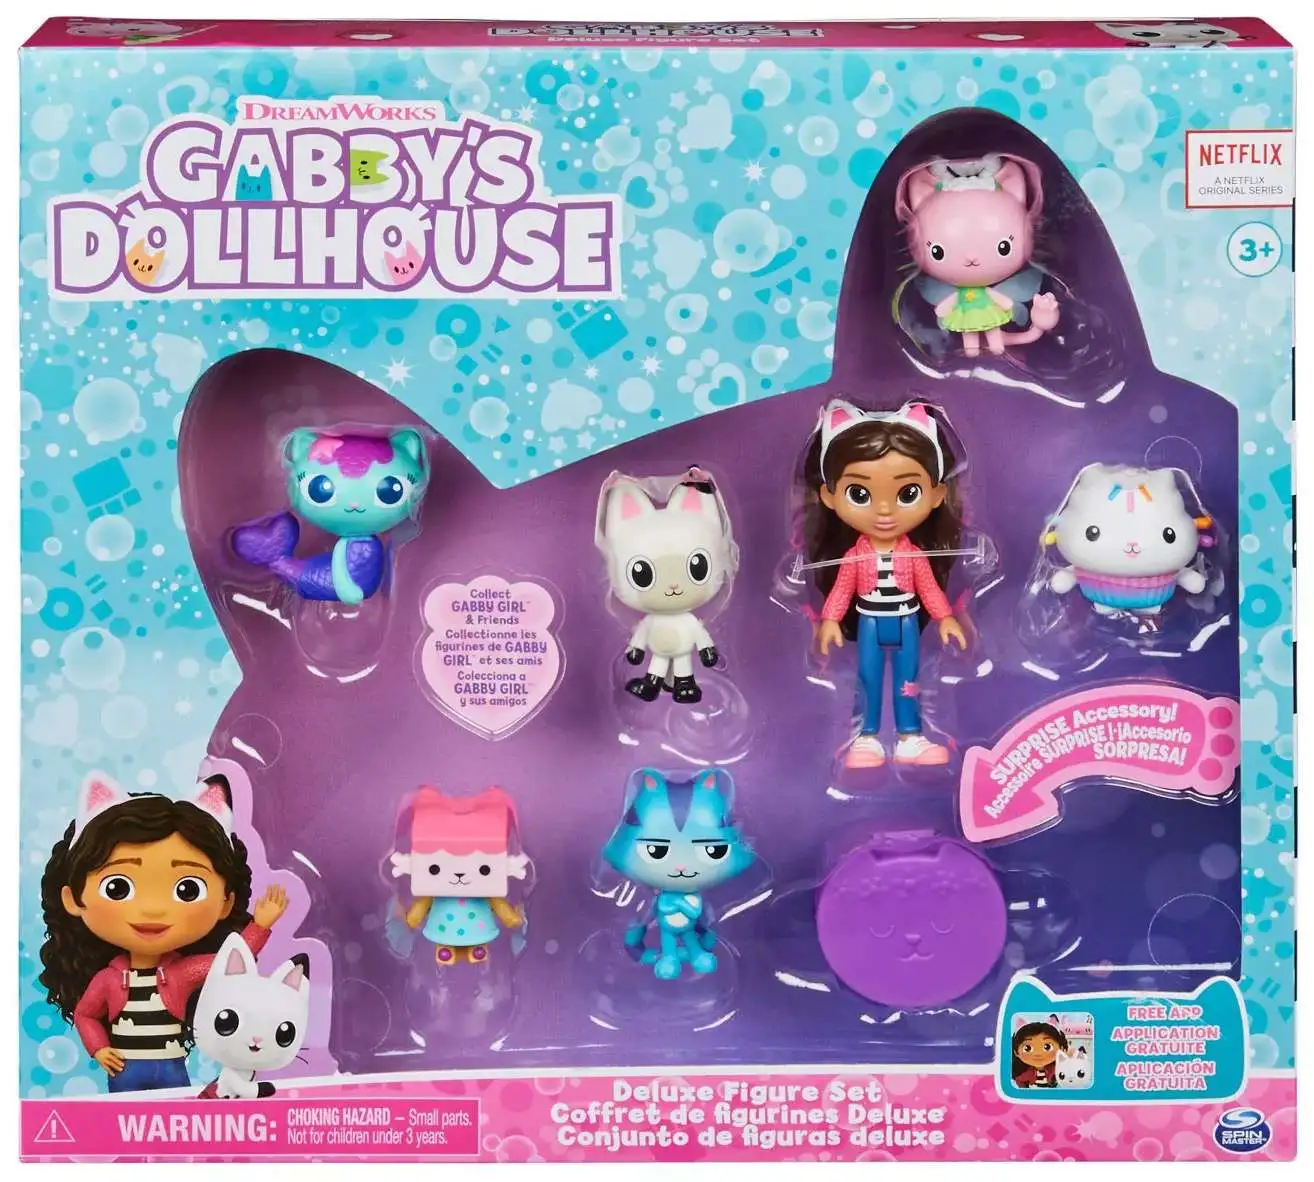 Gabby's Dollhouse, Gabby and Friends Figure Set with Rainbow Doll